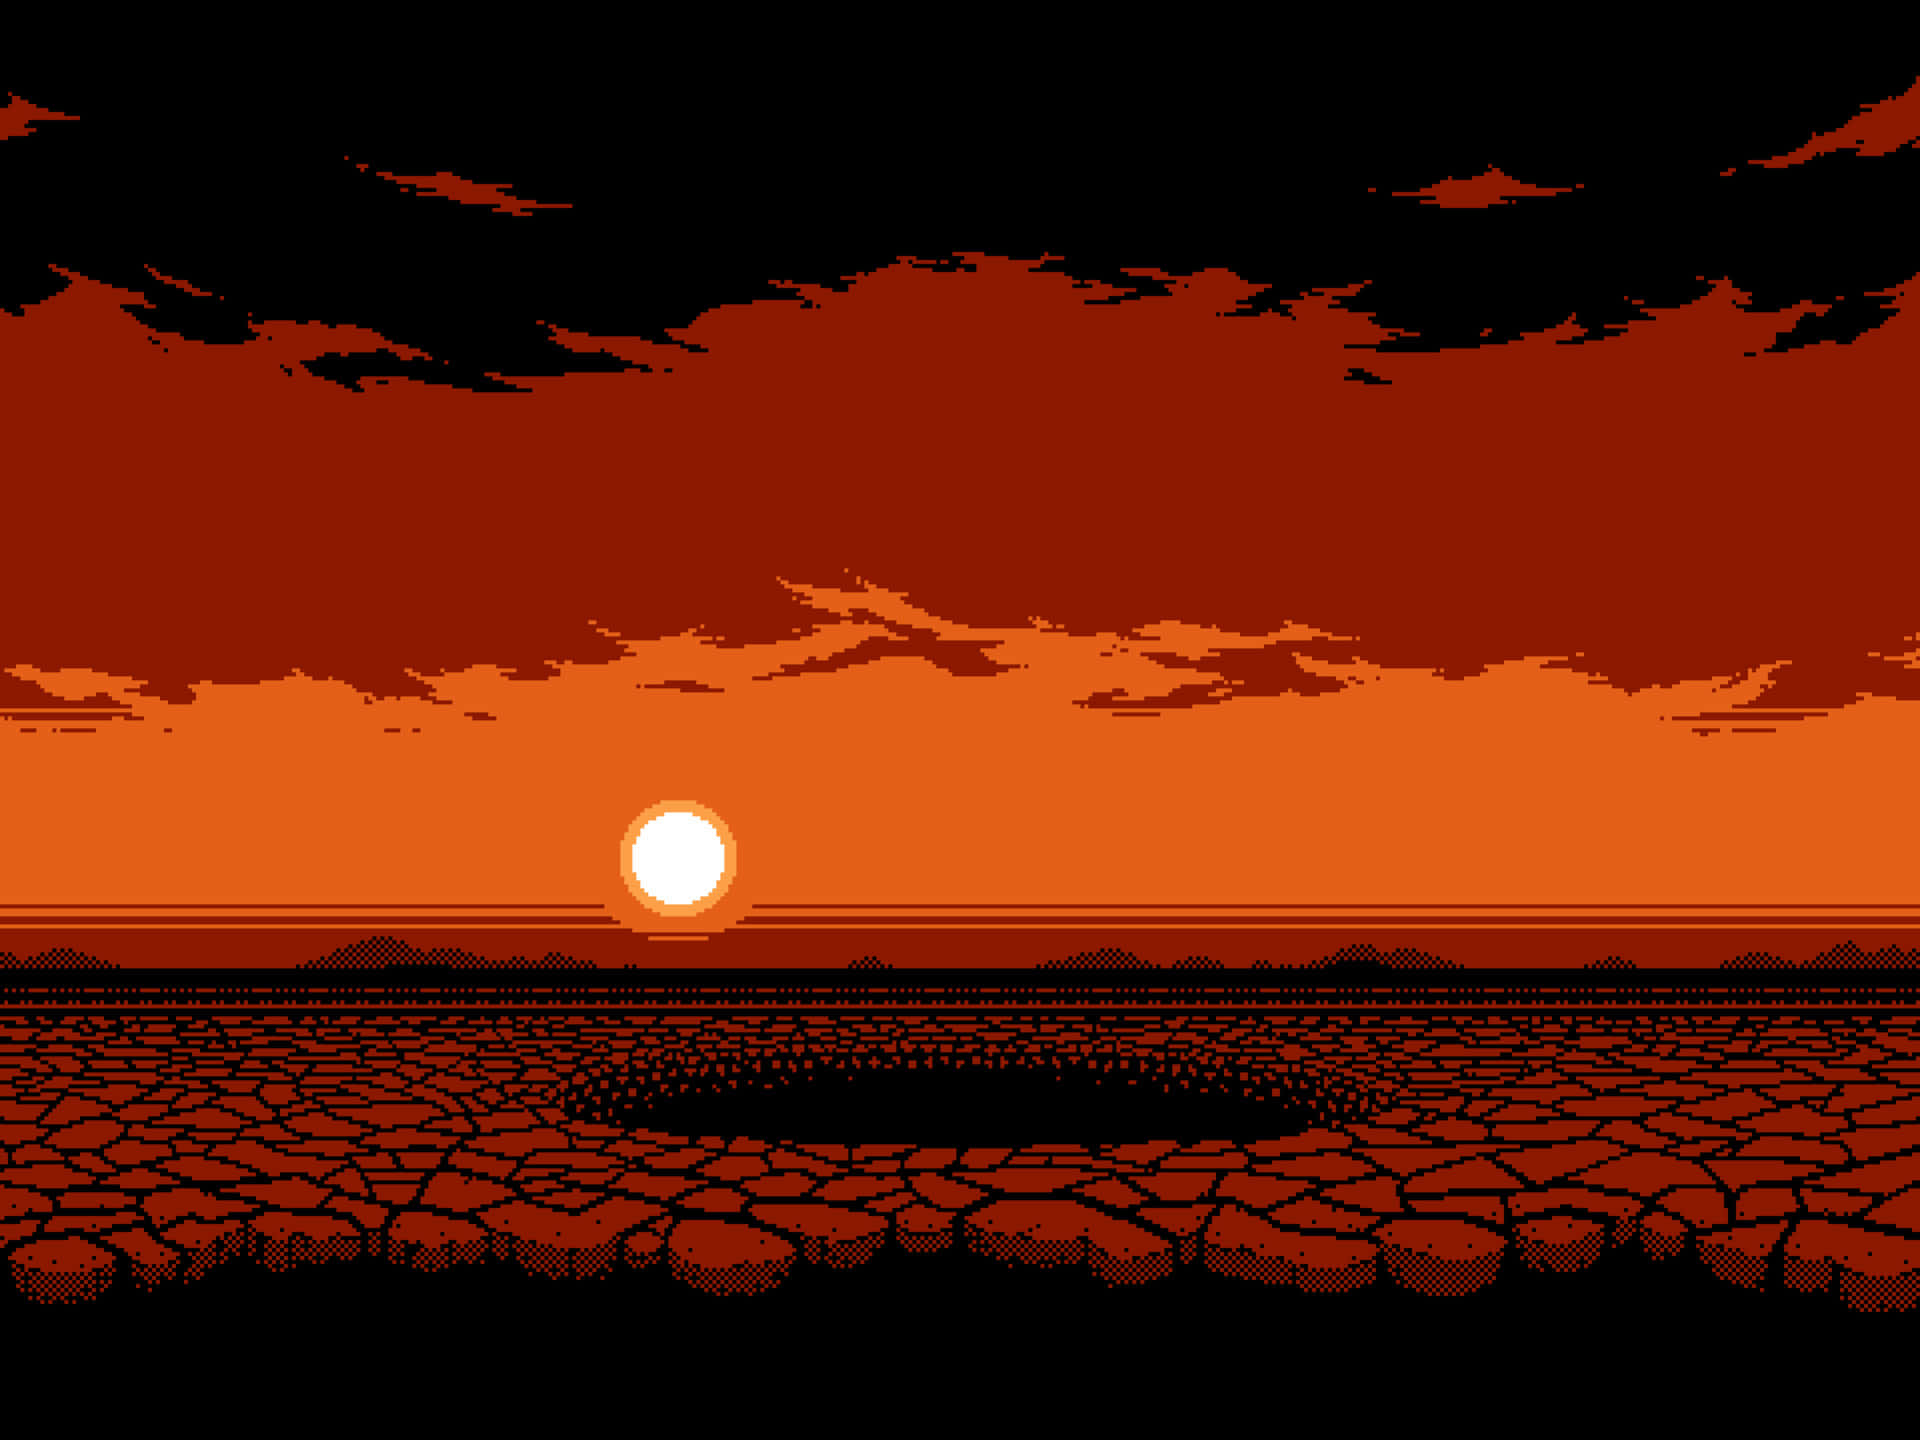 Etbillede Af En Ørkenlandskab Med En Pixeleret Grafik Og Solnedgang I Baggrunden.